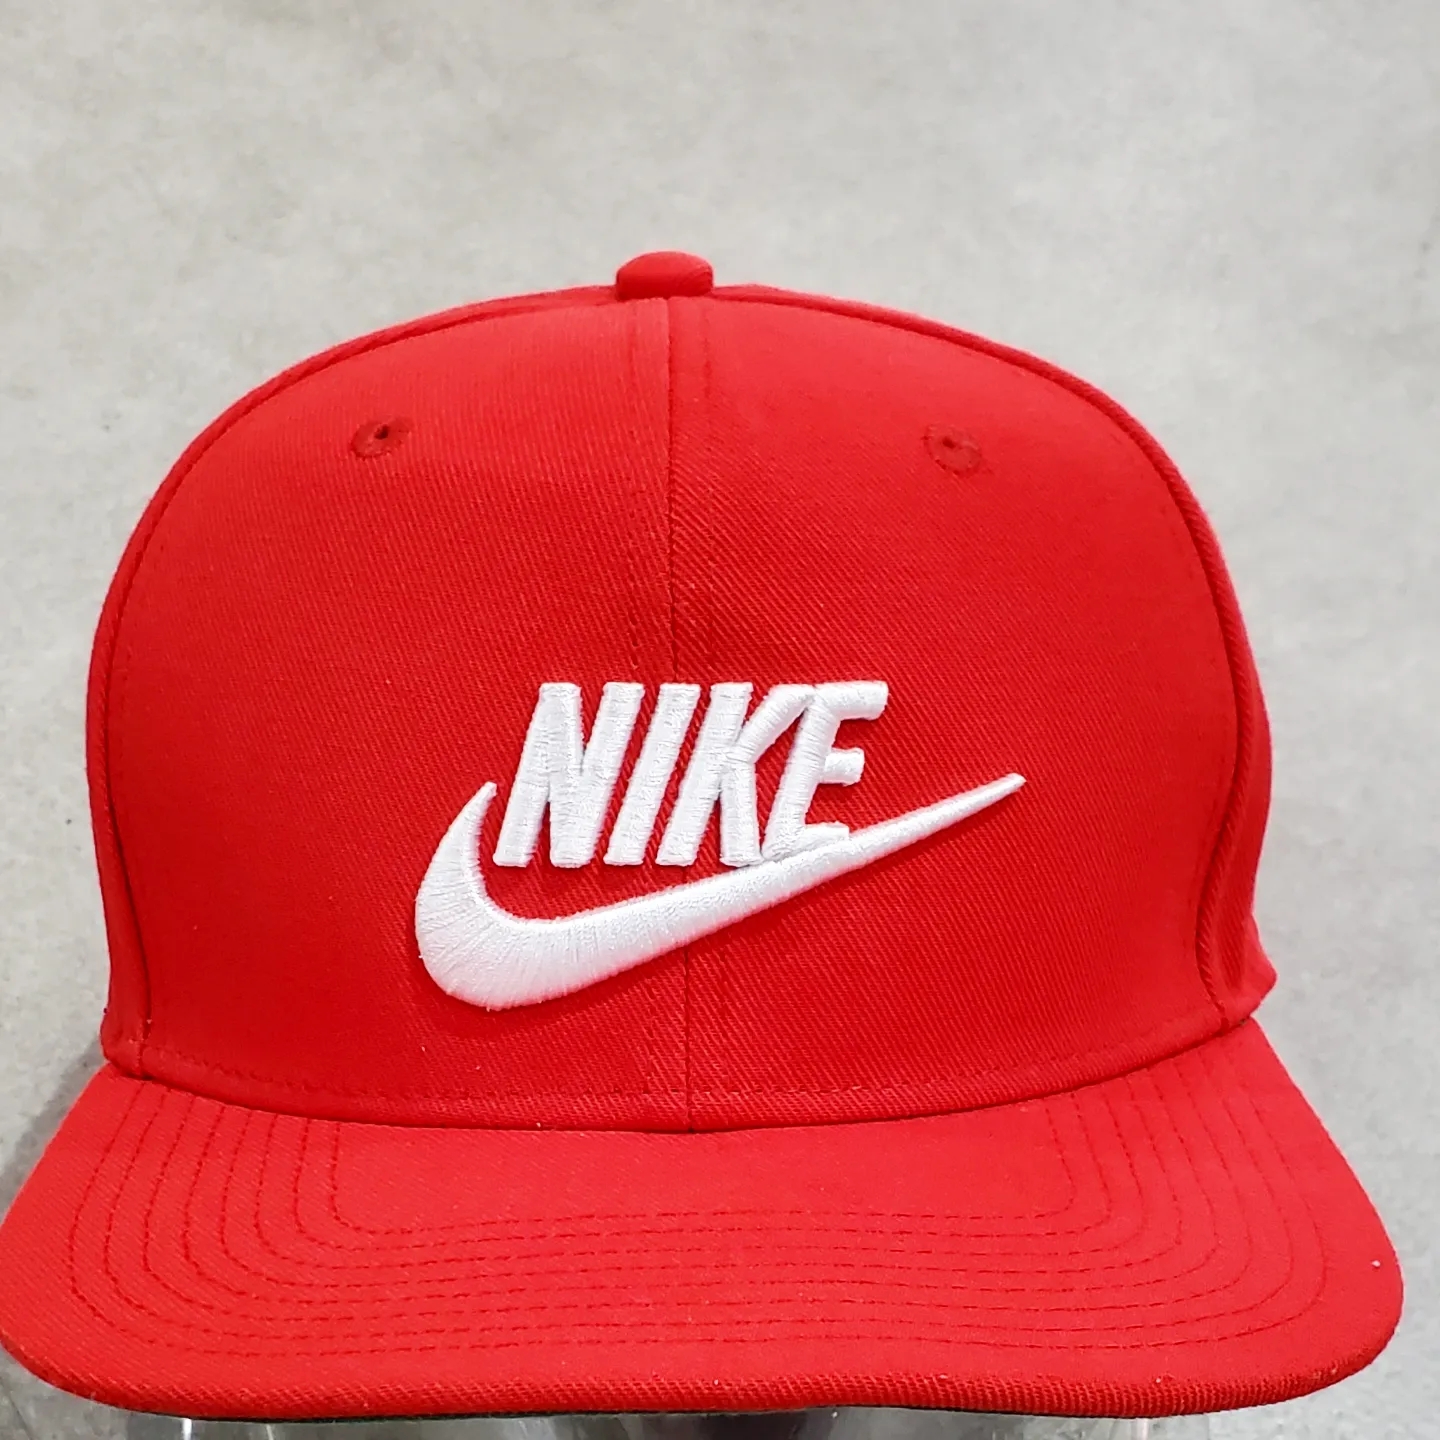 nike ナイキ 赤キャップ cap 刺繍ロゴ 帽子 スウッシュ スケボー 